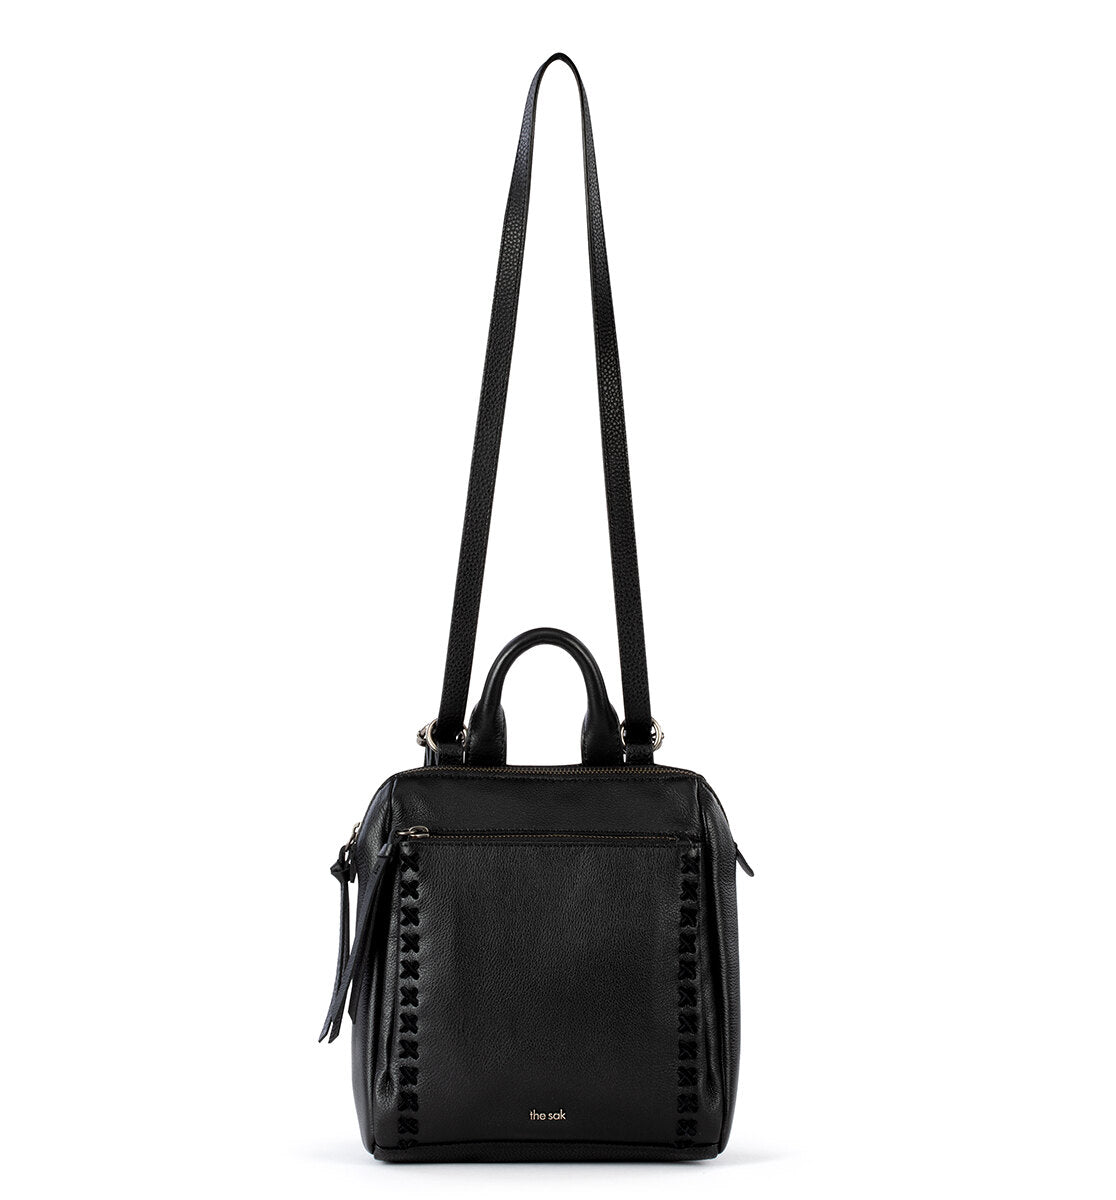 leather backpack mini